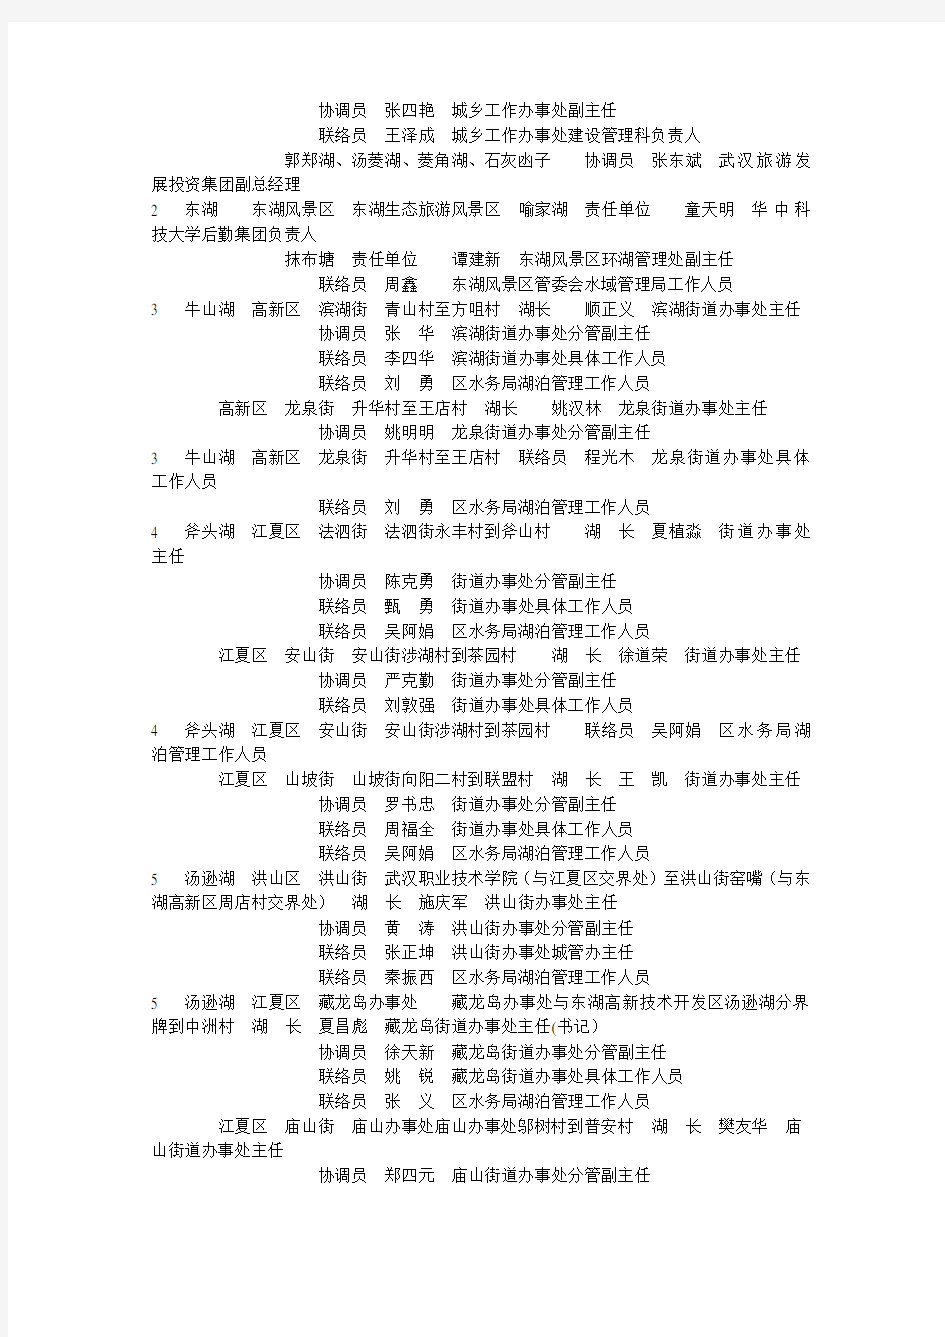 (完整版)武汉市166个湖泊湖长一览表